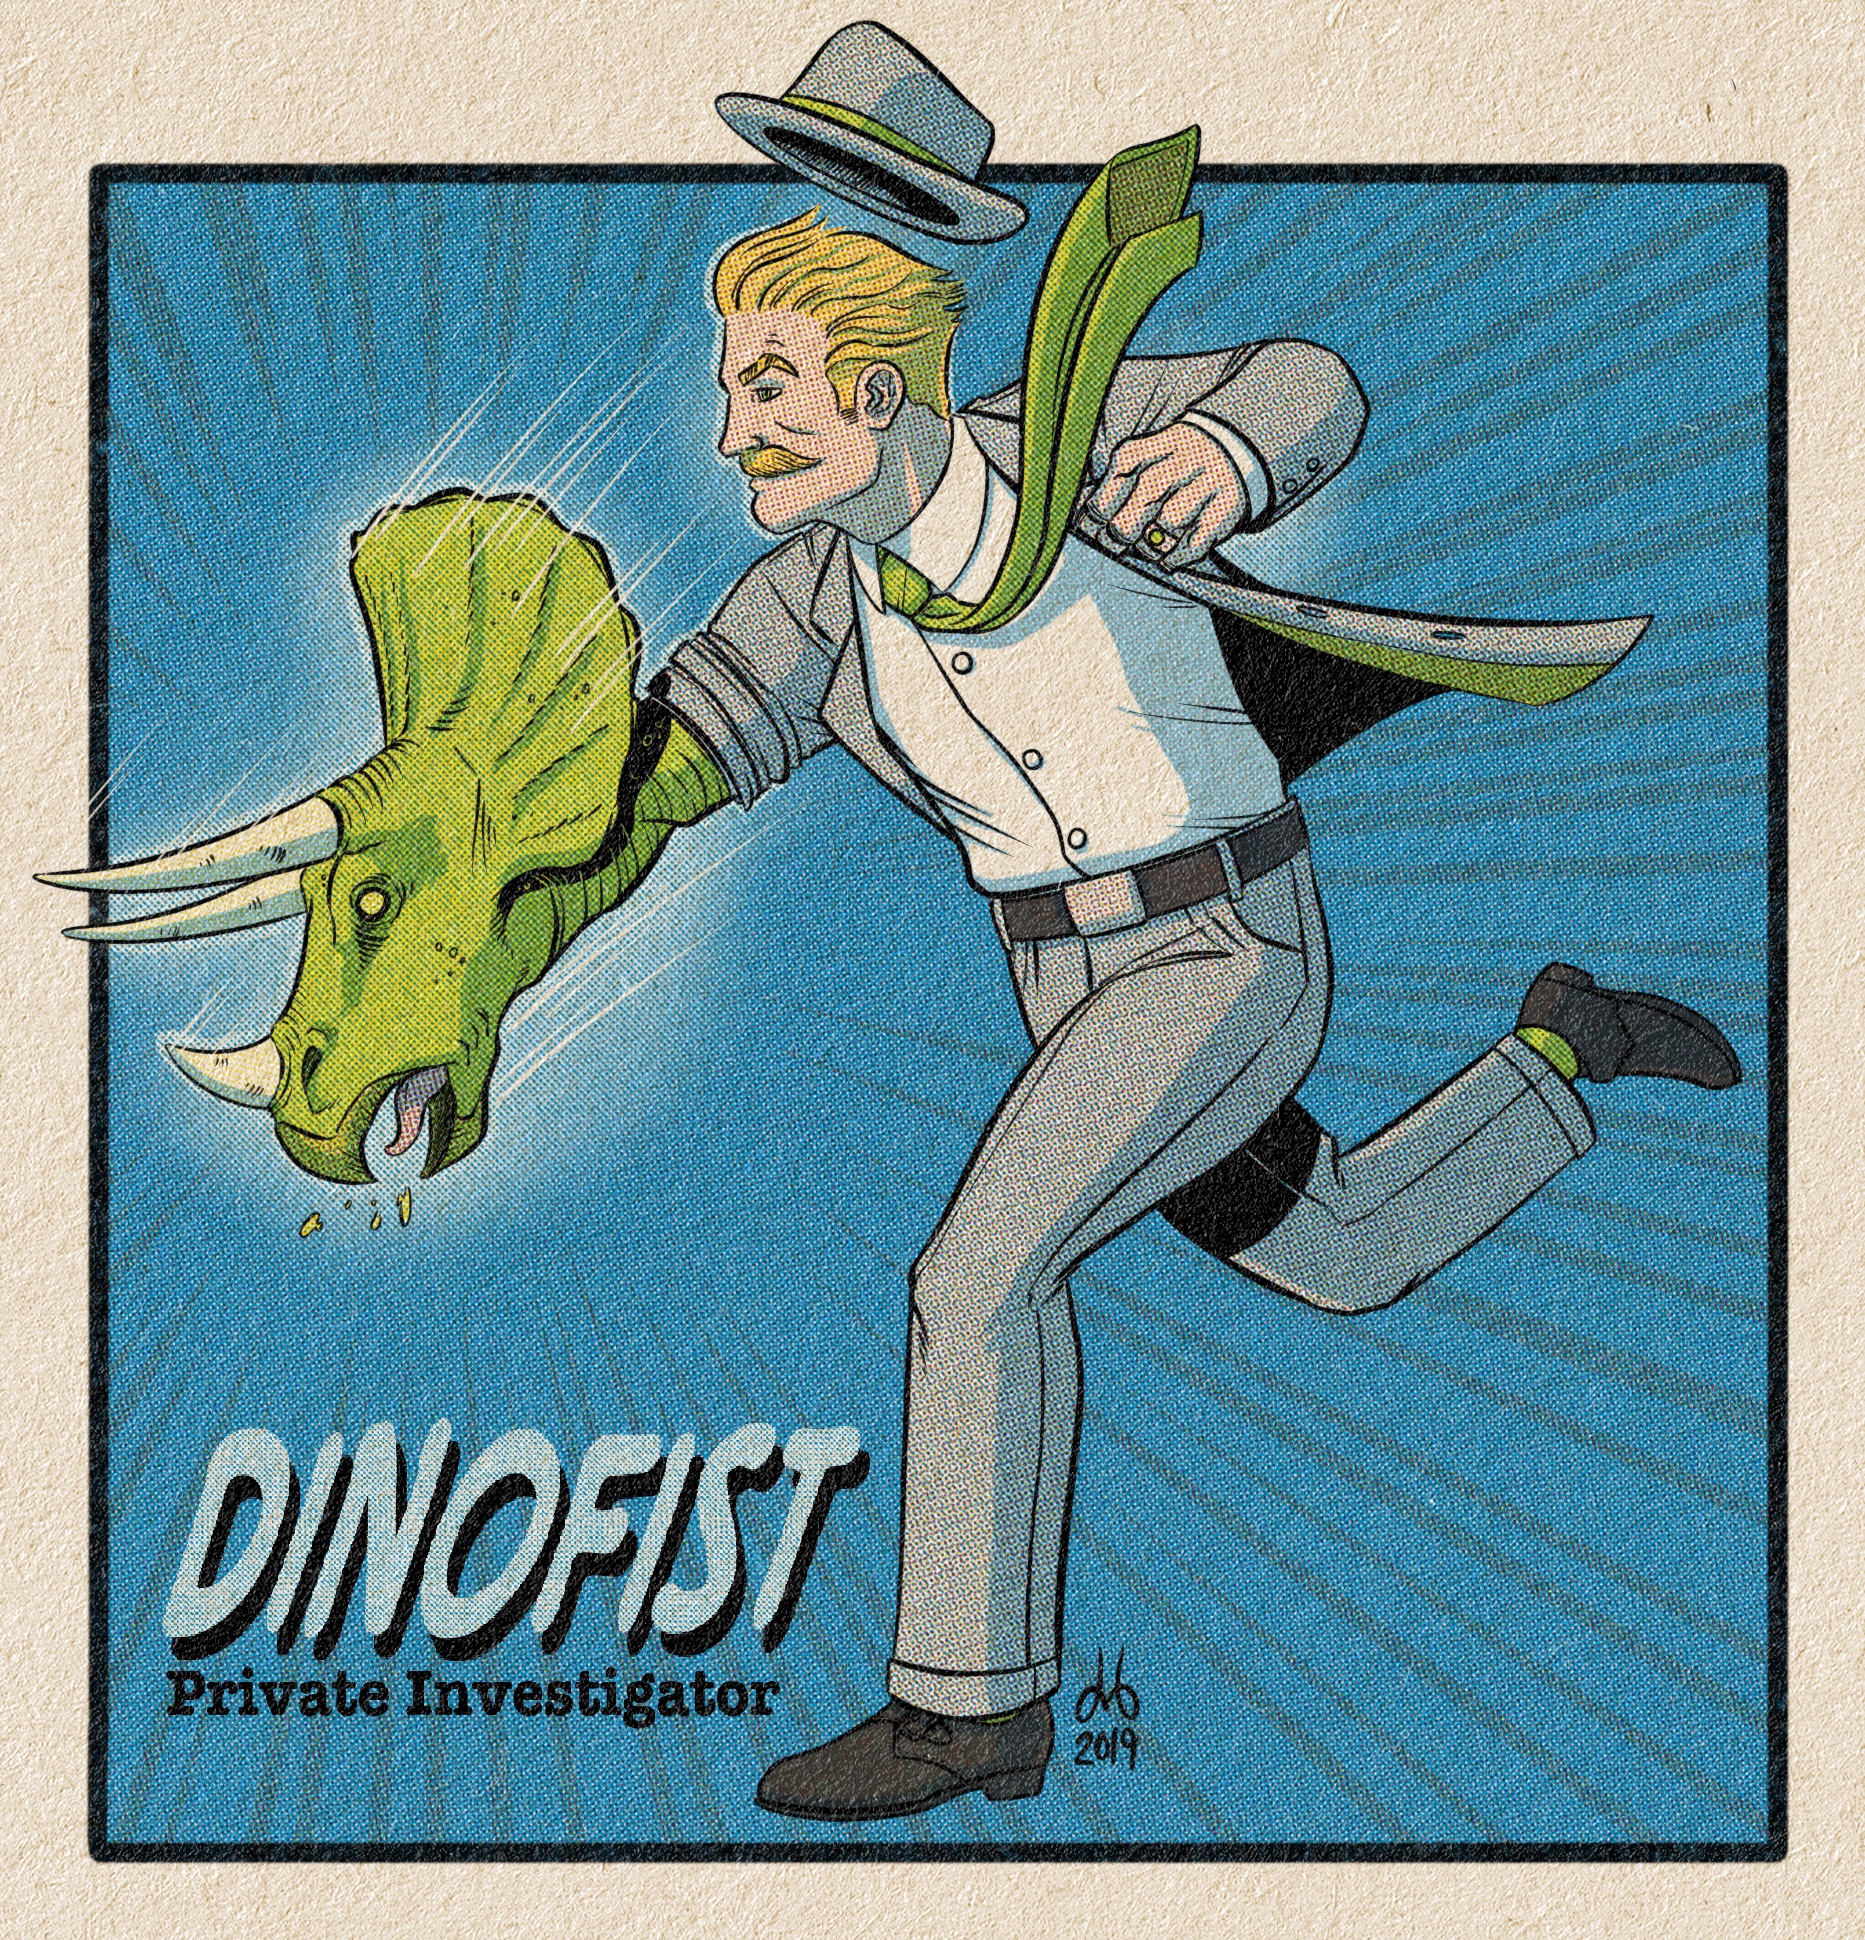 Dinofist, P.I.